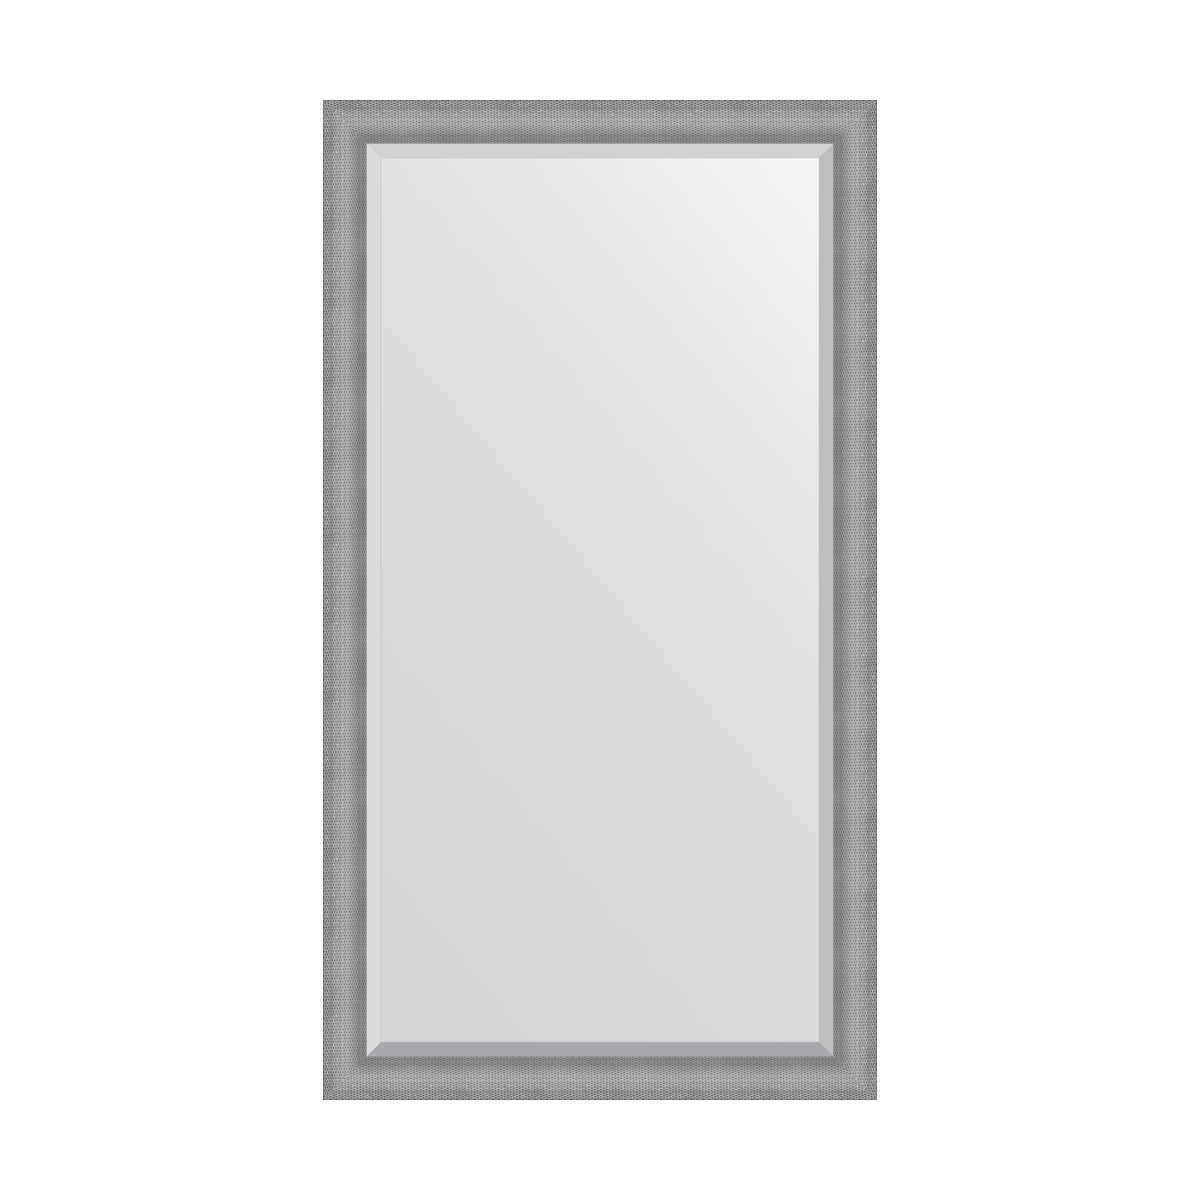 Зеркало напольное с фацетом в багетной раме Evoform серебряная кольчуга 88 мм 112x202 см зеркало напольное с гравировкой в багетной раме серебряная кольчуга 88 мм 112x202 см